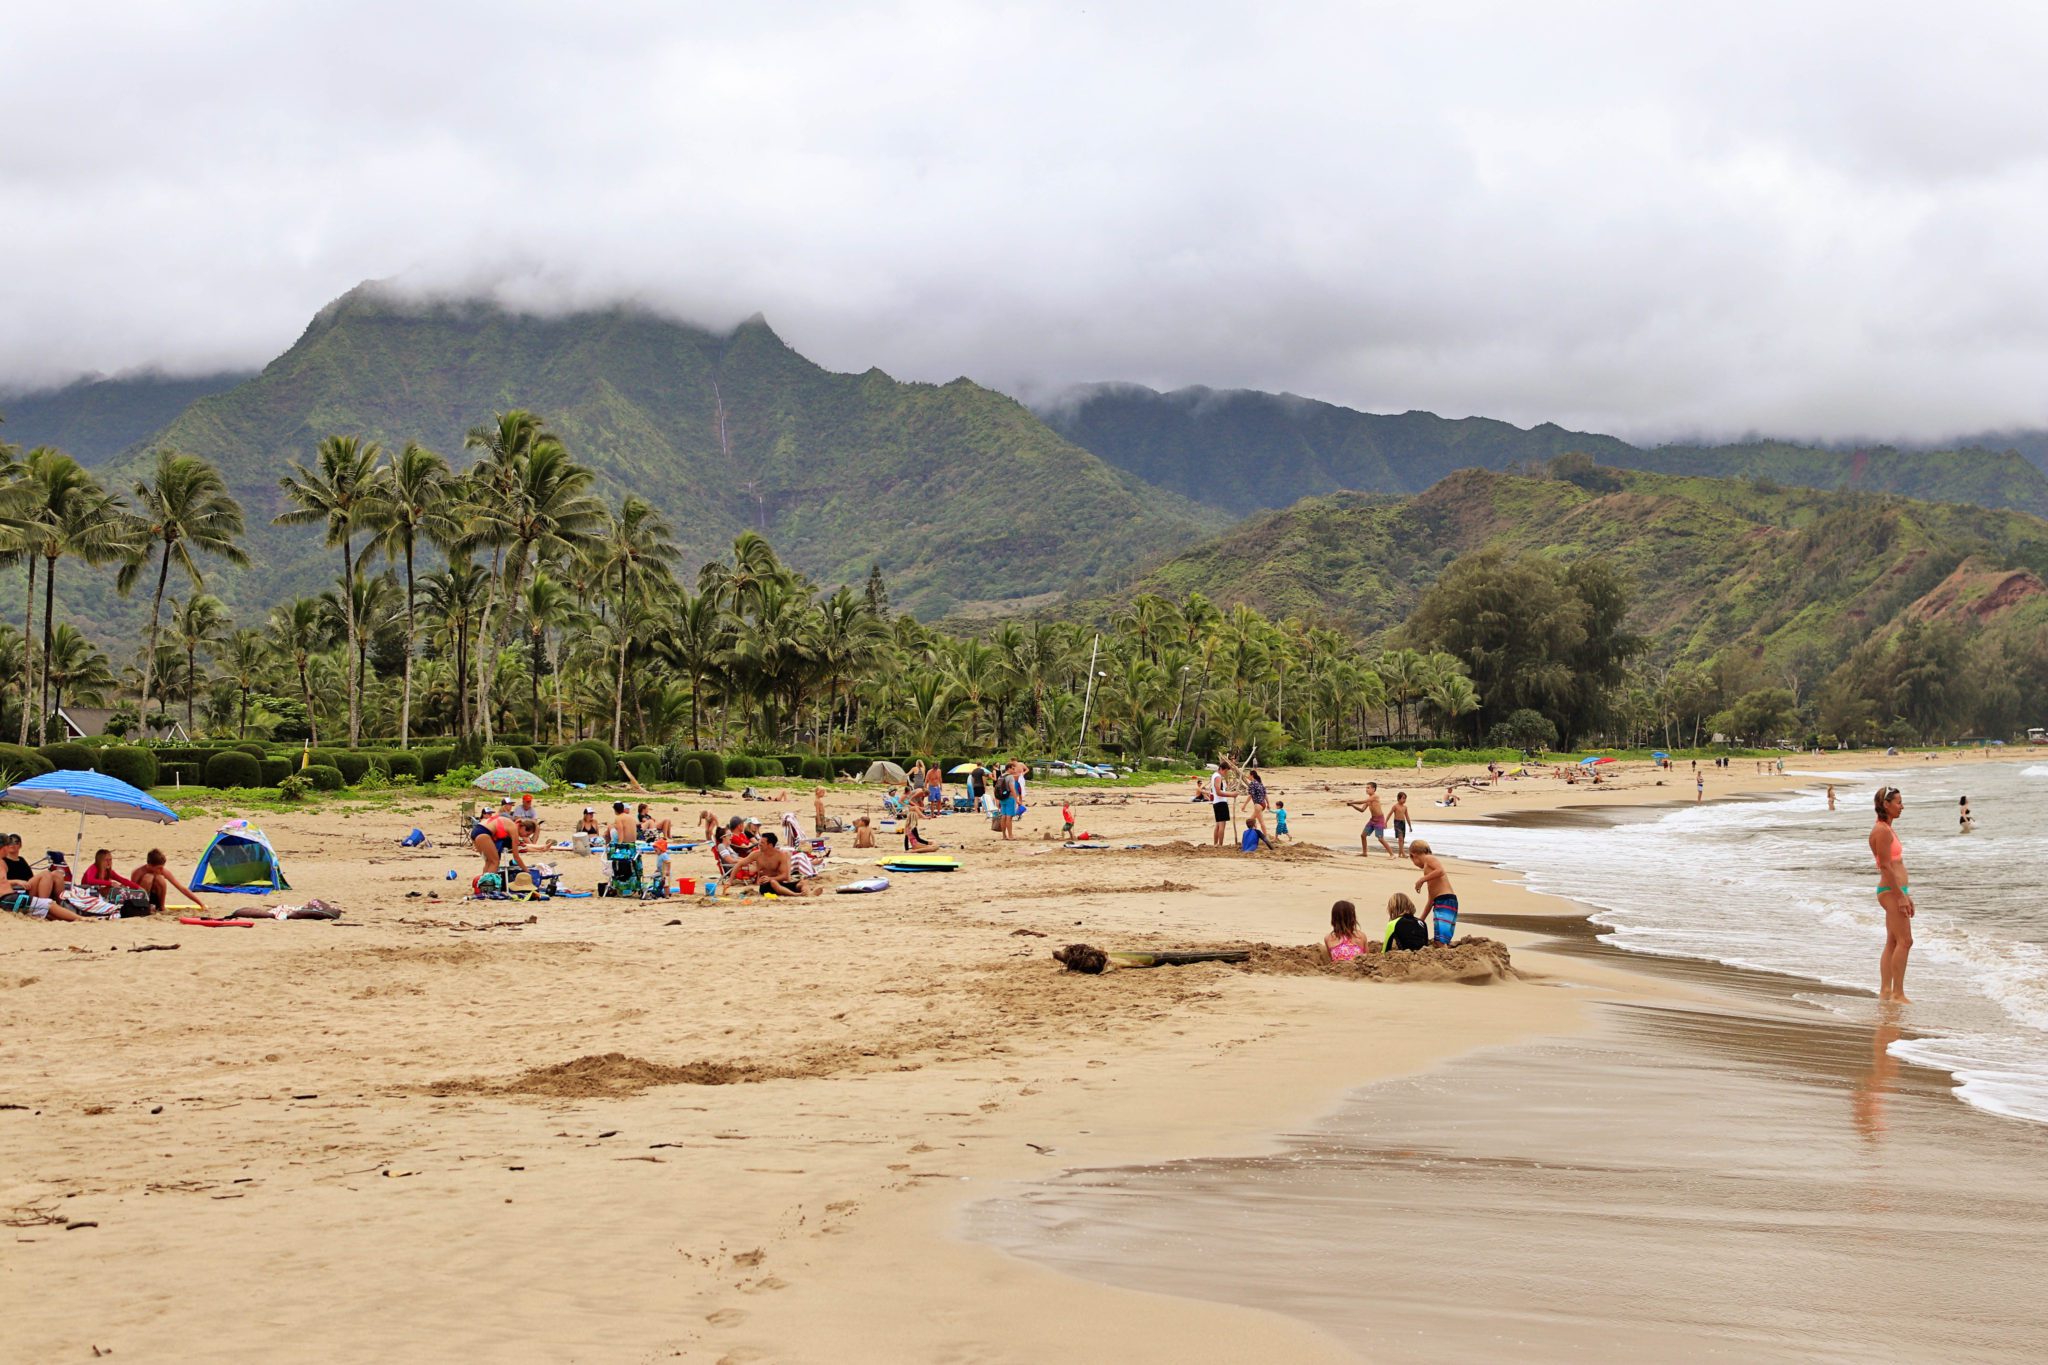 Best beaches in Kauai for kids | Top things to do in Kauai #kauai #hawaii #simplywander